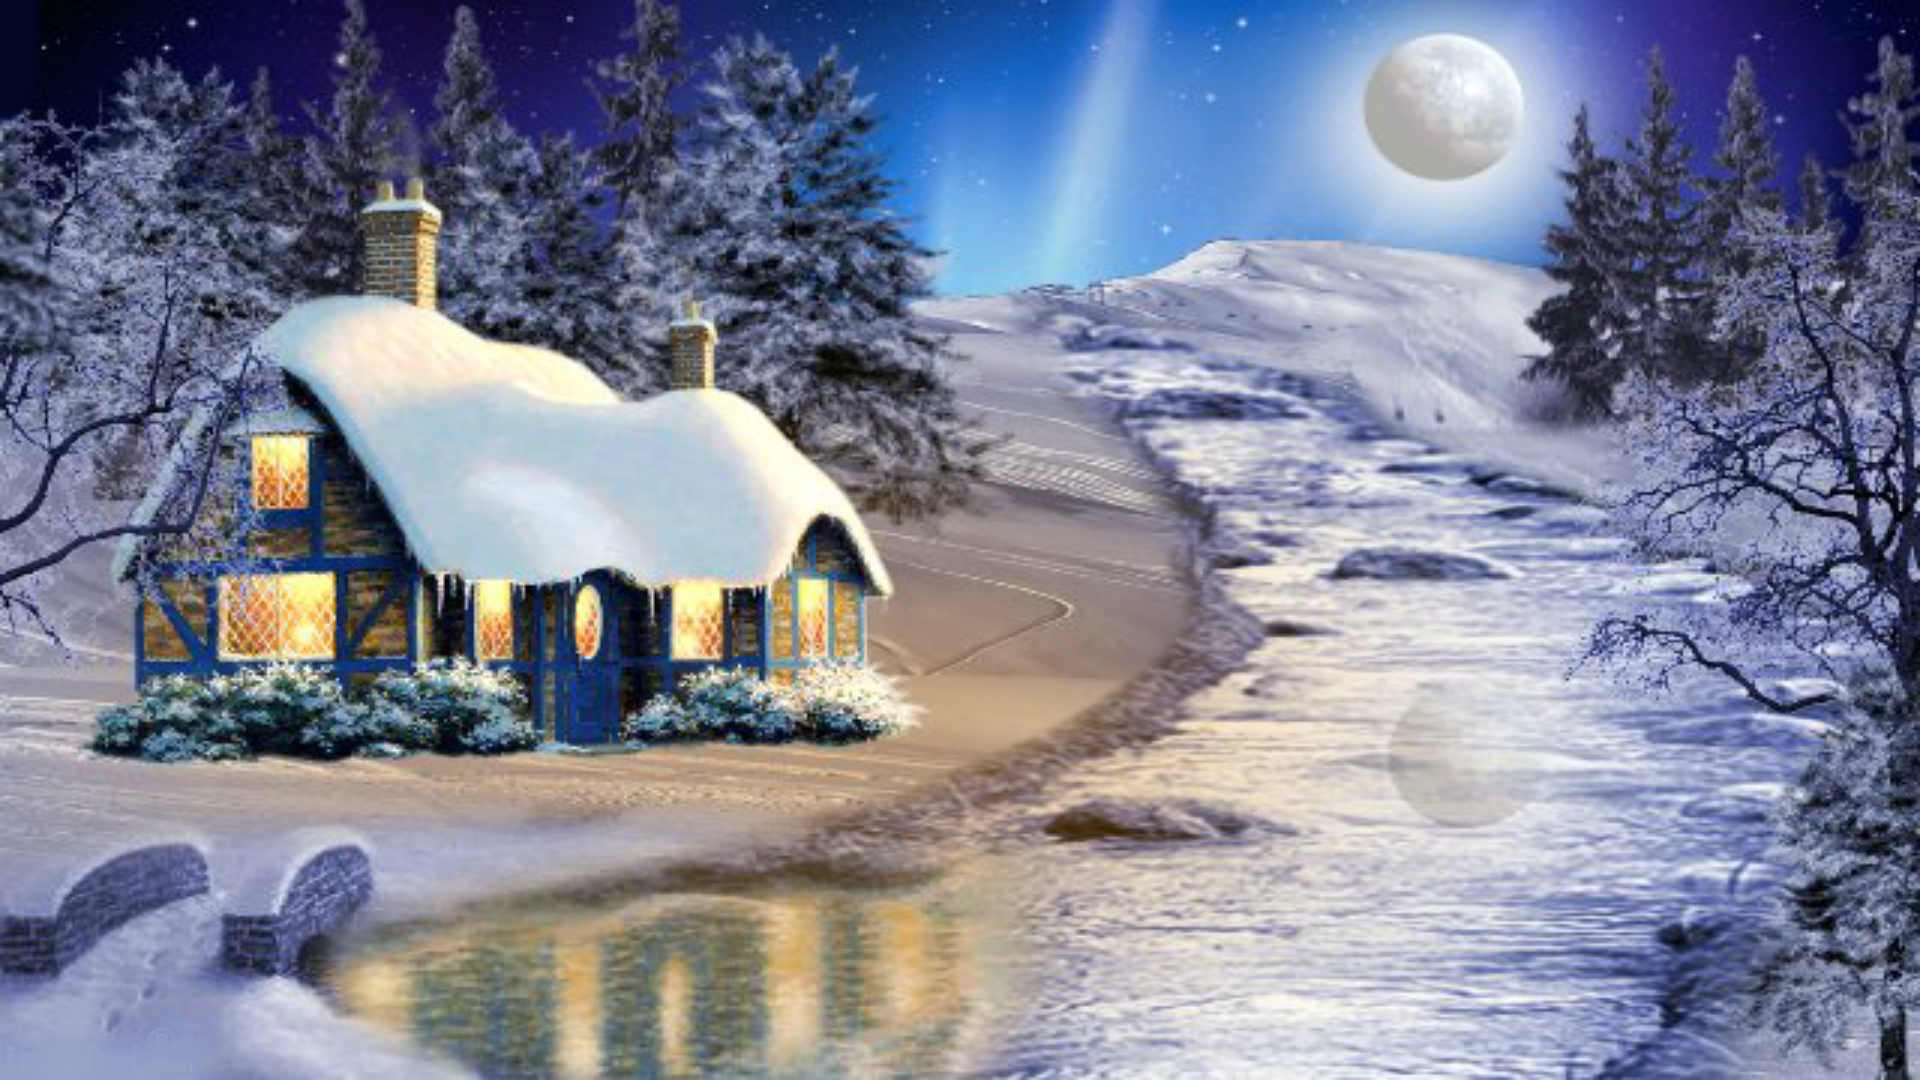 Winter House on Full Moon Night